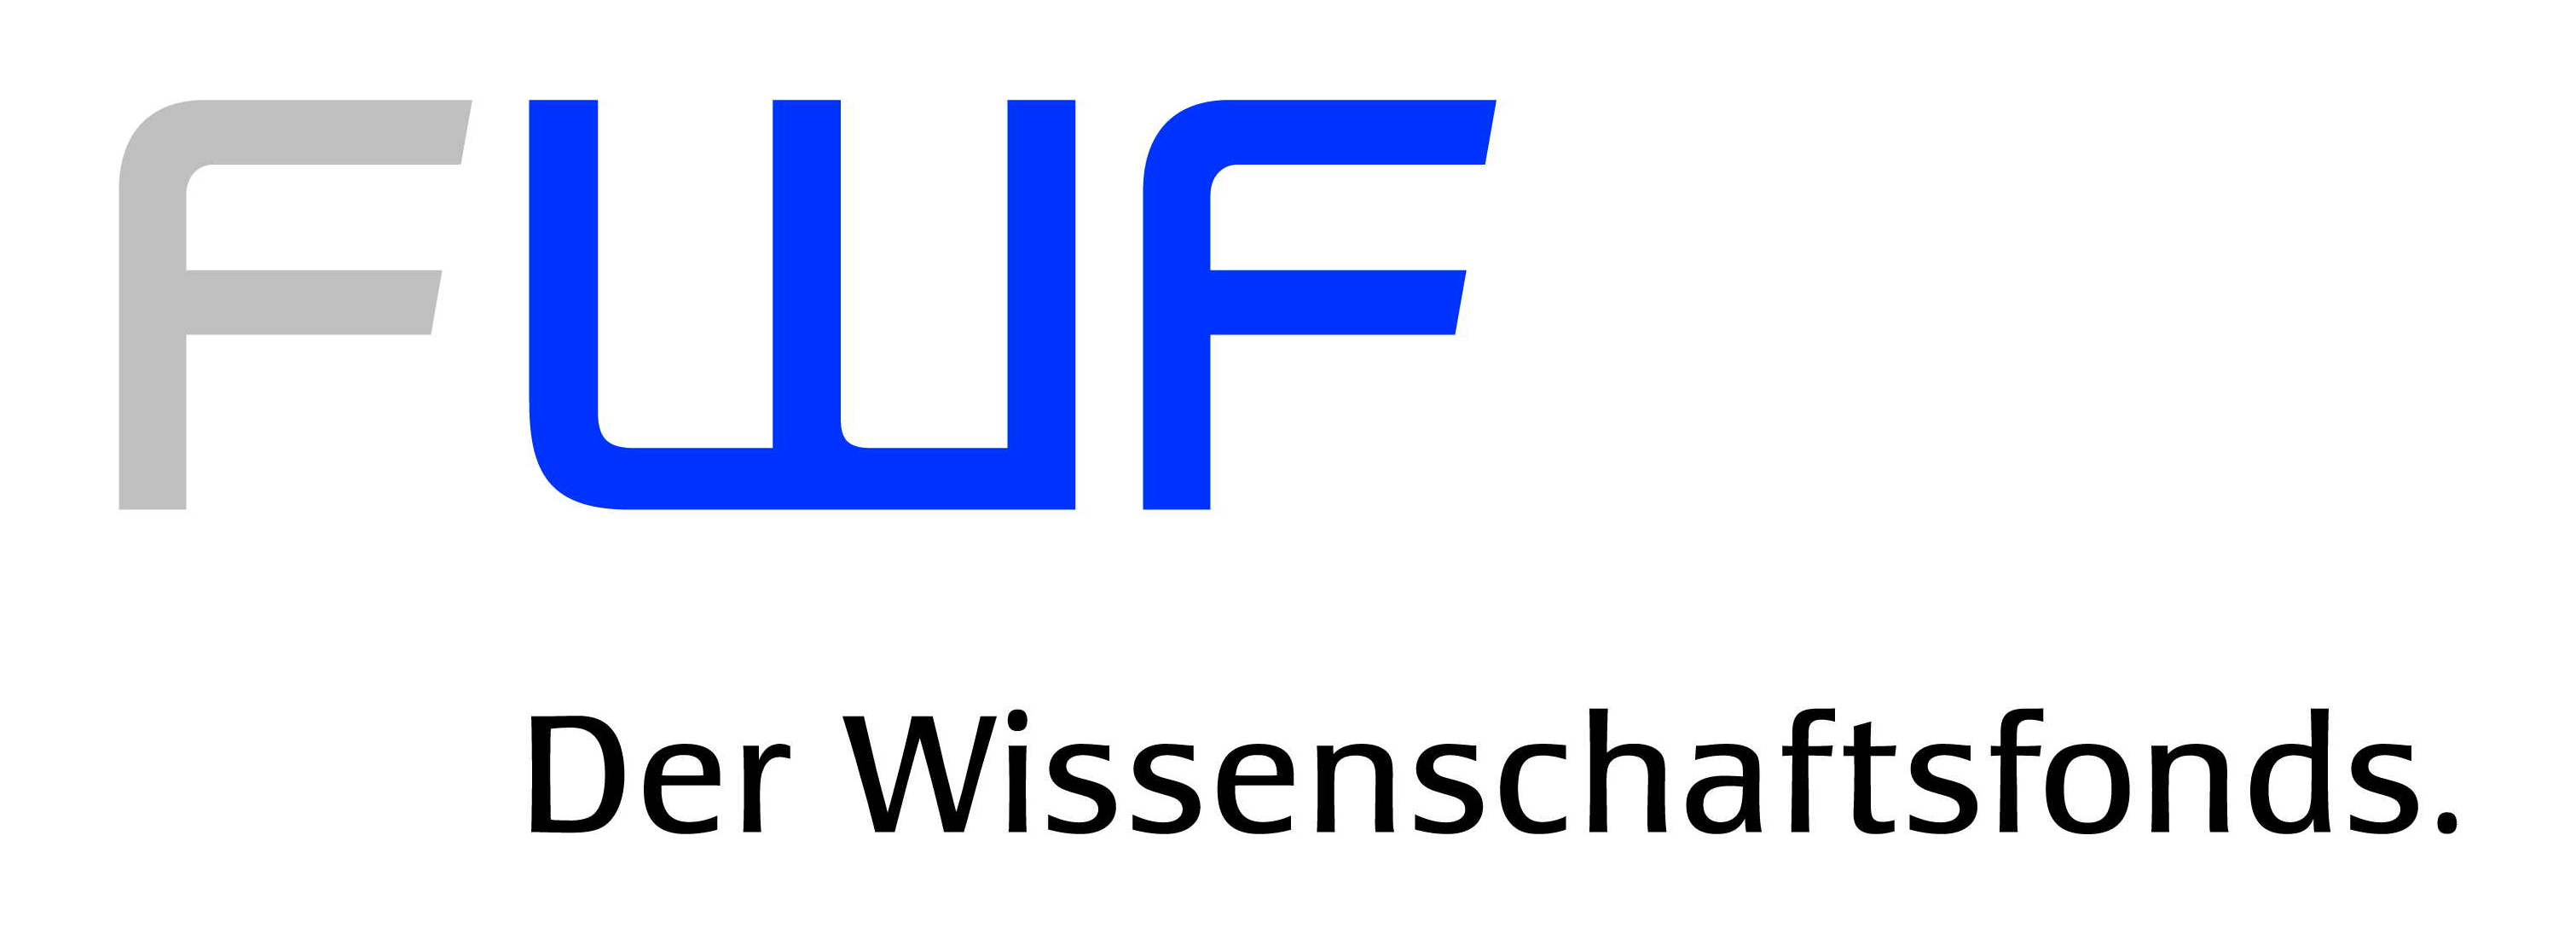 fwf-logo2.jpg